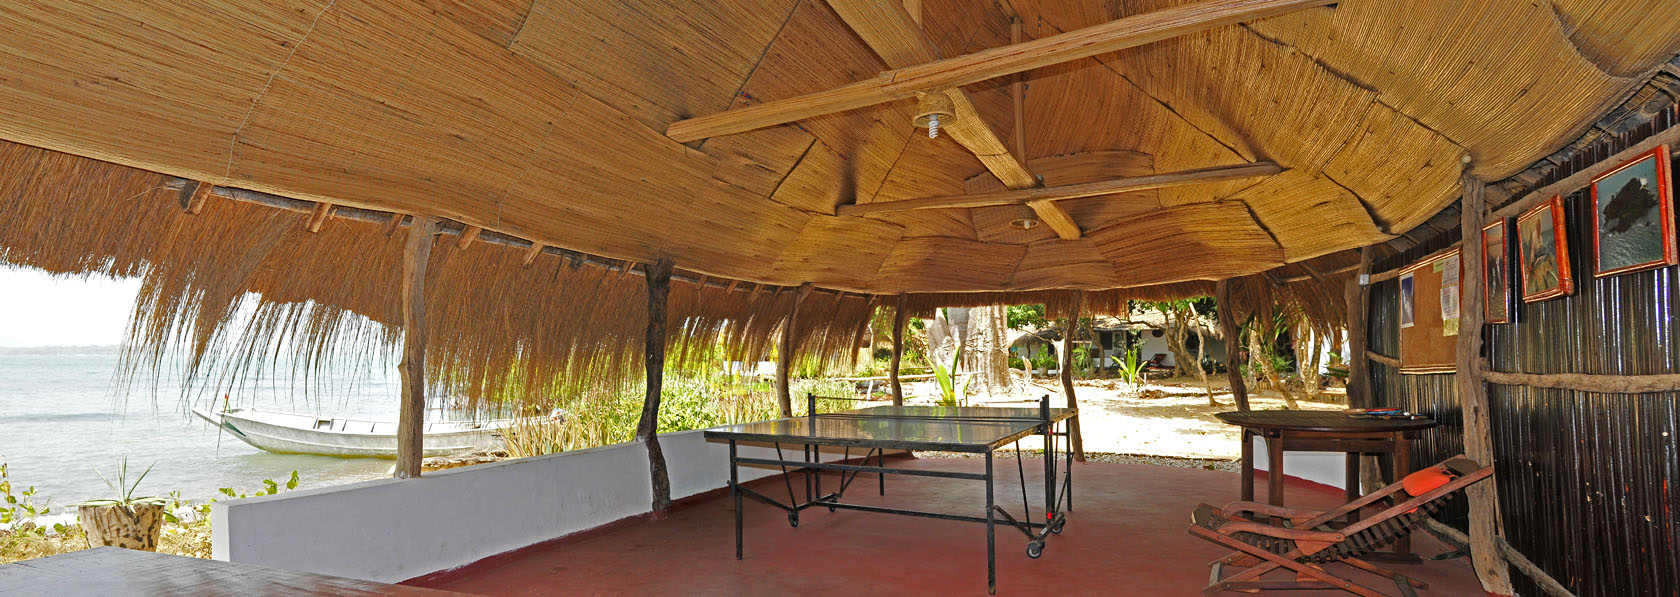 table de ping pong abrité sous une belle case style africain sur l ilot de kere